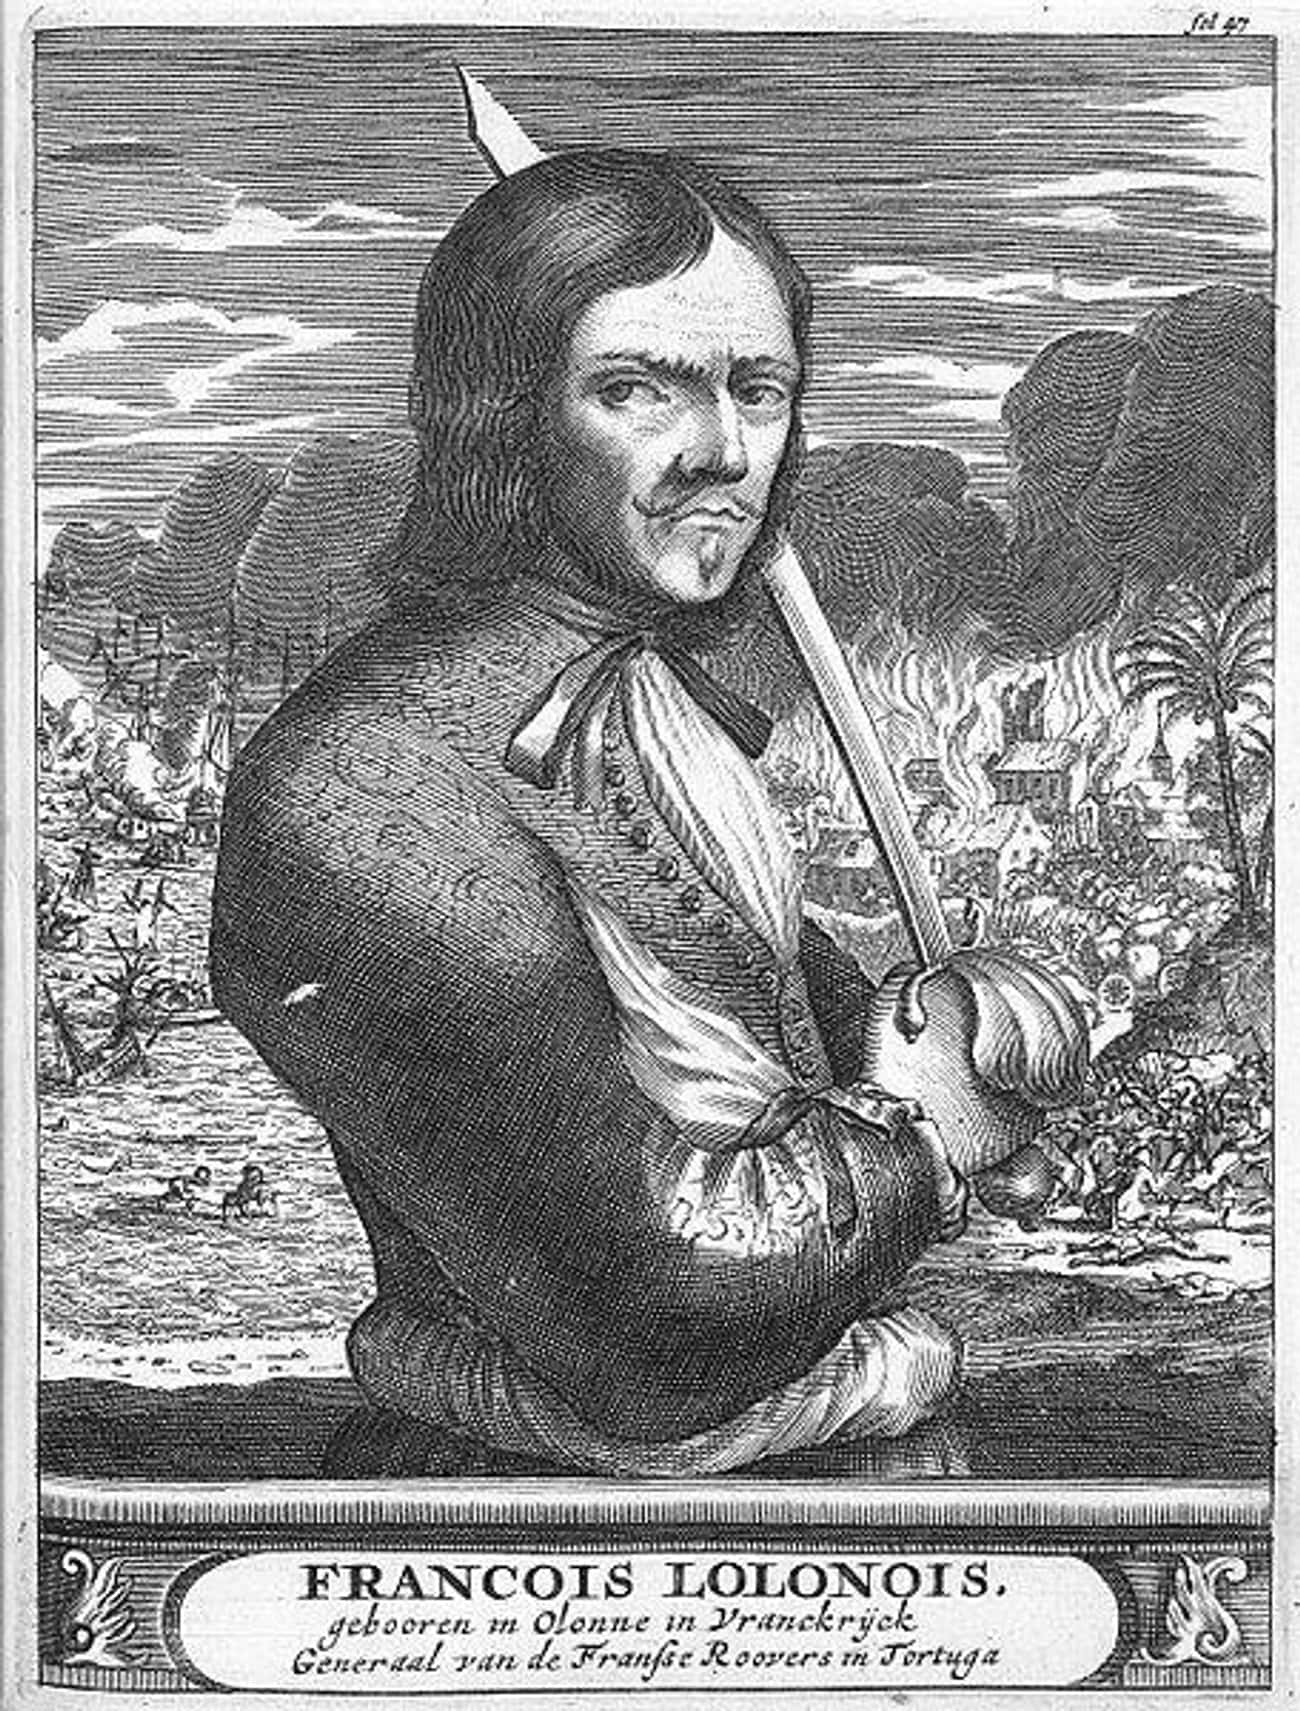 François l'Olonnais Created Terror By Eating A Captive's Heart